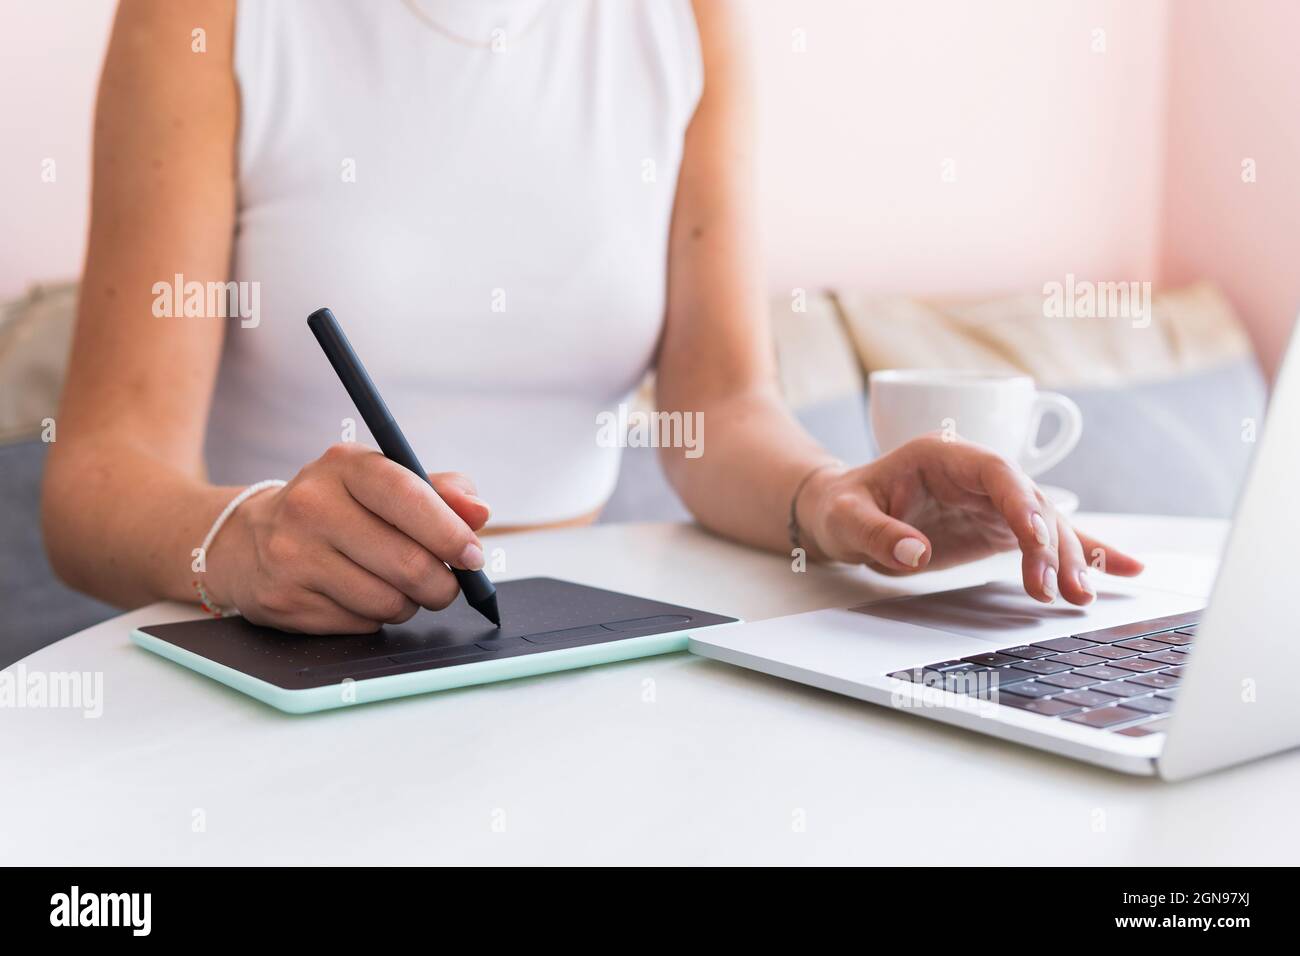 Femme design professionnel utilisant un ordinateur portable et une tablette graphique dans un café Banque D'Images